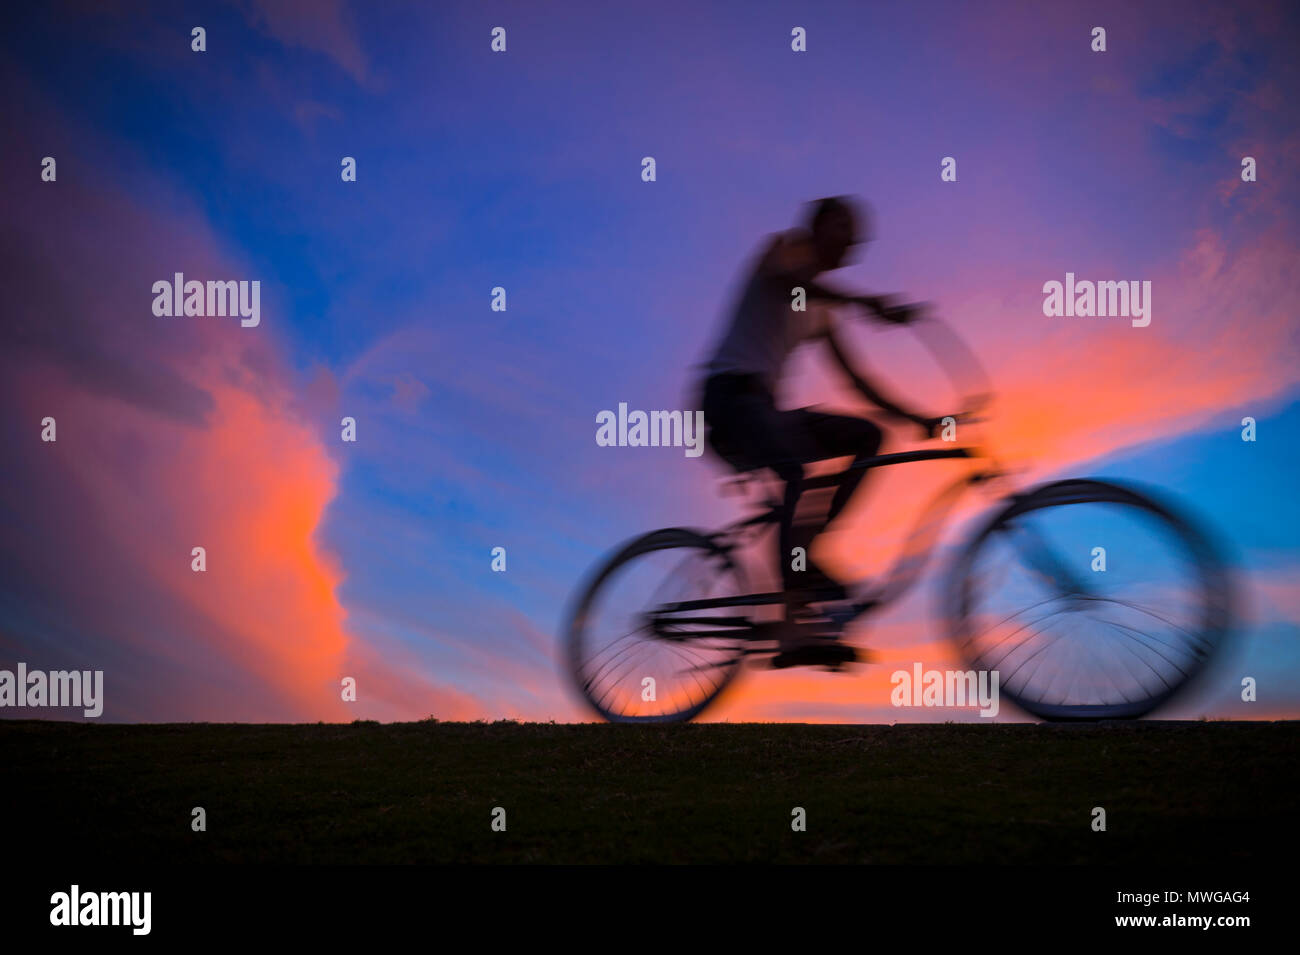 Colorato tramonto vista di una silhouette di un uomo in sella a una moto con motion blur. Rallentare la velocità dello shutter per accrescere il senso di movimento. Foto Stock